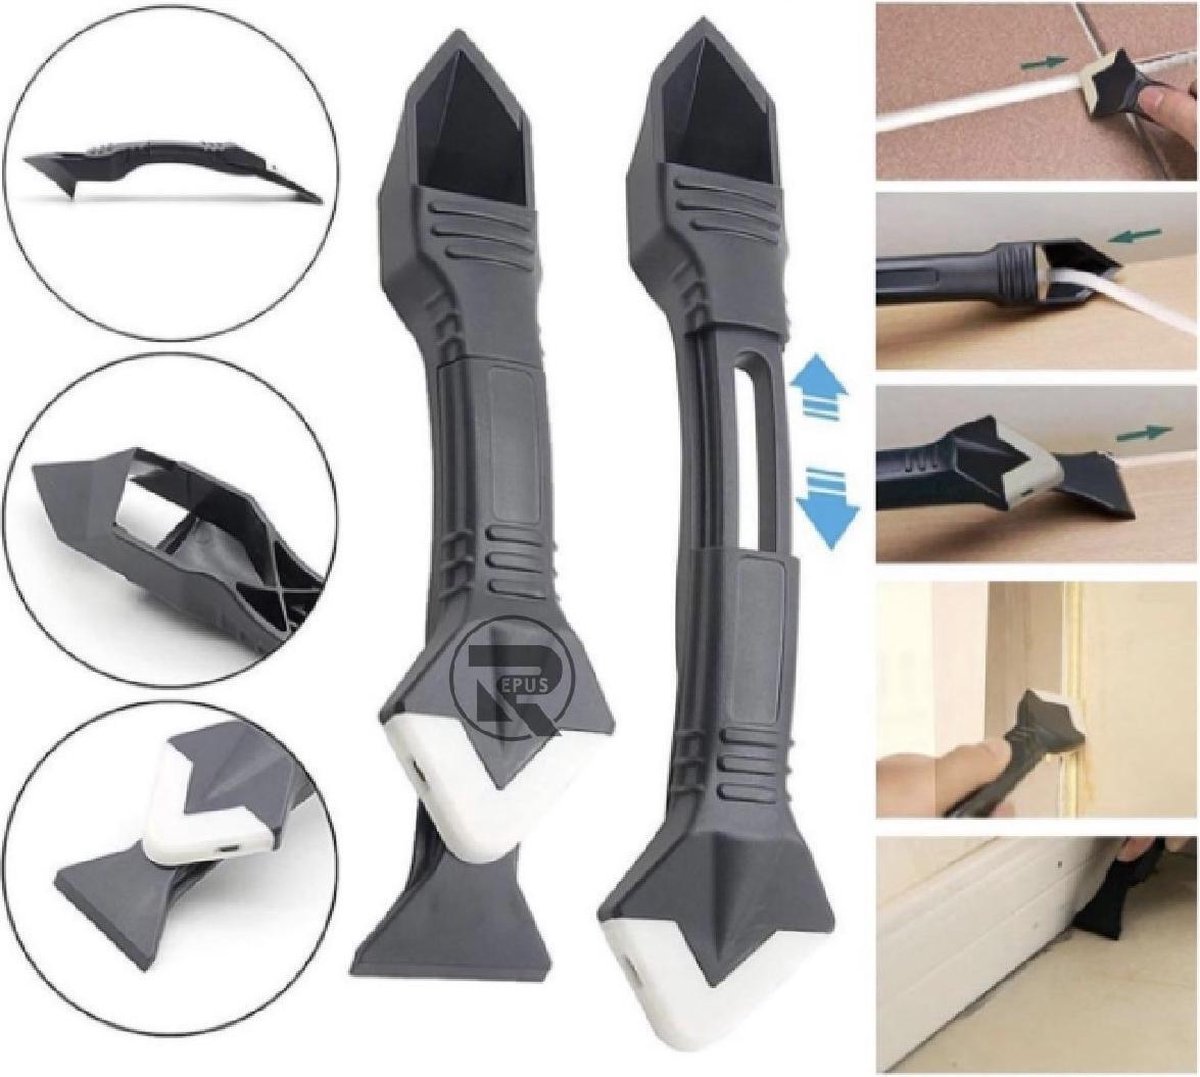 REPUS 2.0 3-in-1 Kit Schraper | Kitspatel | Siliconen kit verwijderaar | De ultieme tool voor kit verwijderen en zetten van strakke randen | Musthave | Cadeau |Mannen|Laslijm |lijmresidue schraper | Naad reparatie tool|